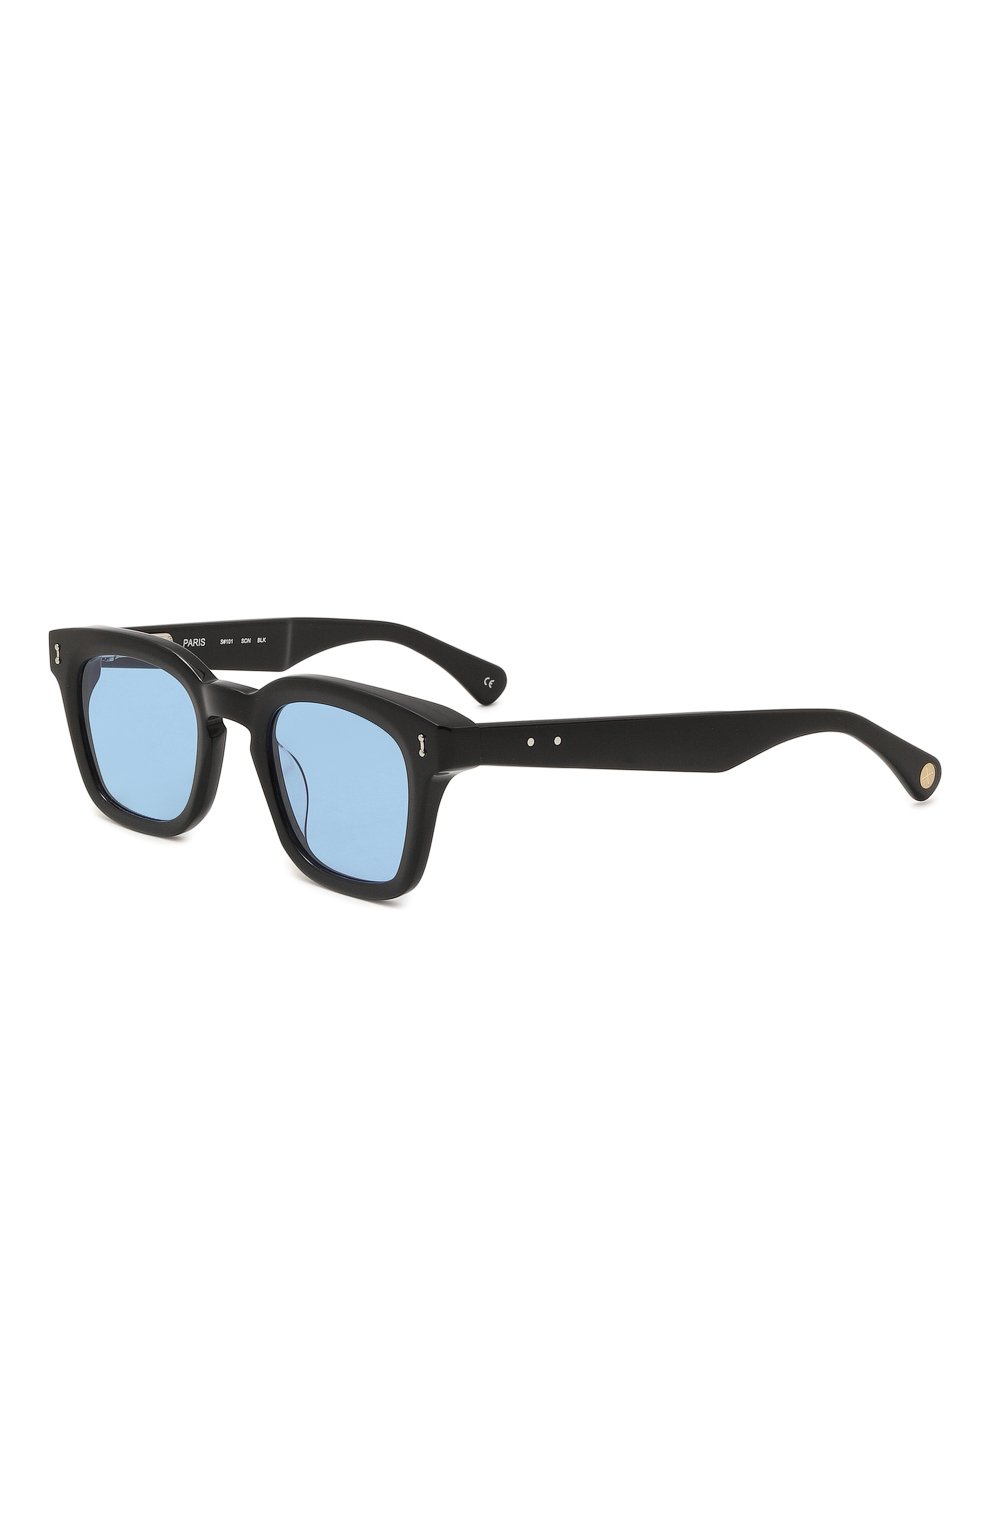 Фото Мужские синие солнцезащитные очки PETER&MAY WALK, арт. S#101 S0N BLACK BLUE Китай S#101 S0N BLACK BLUE 